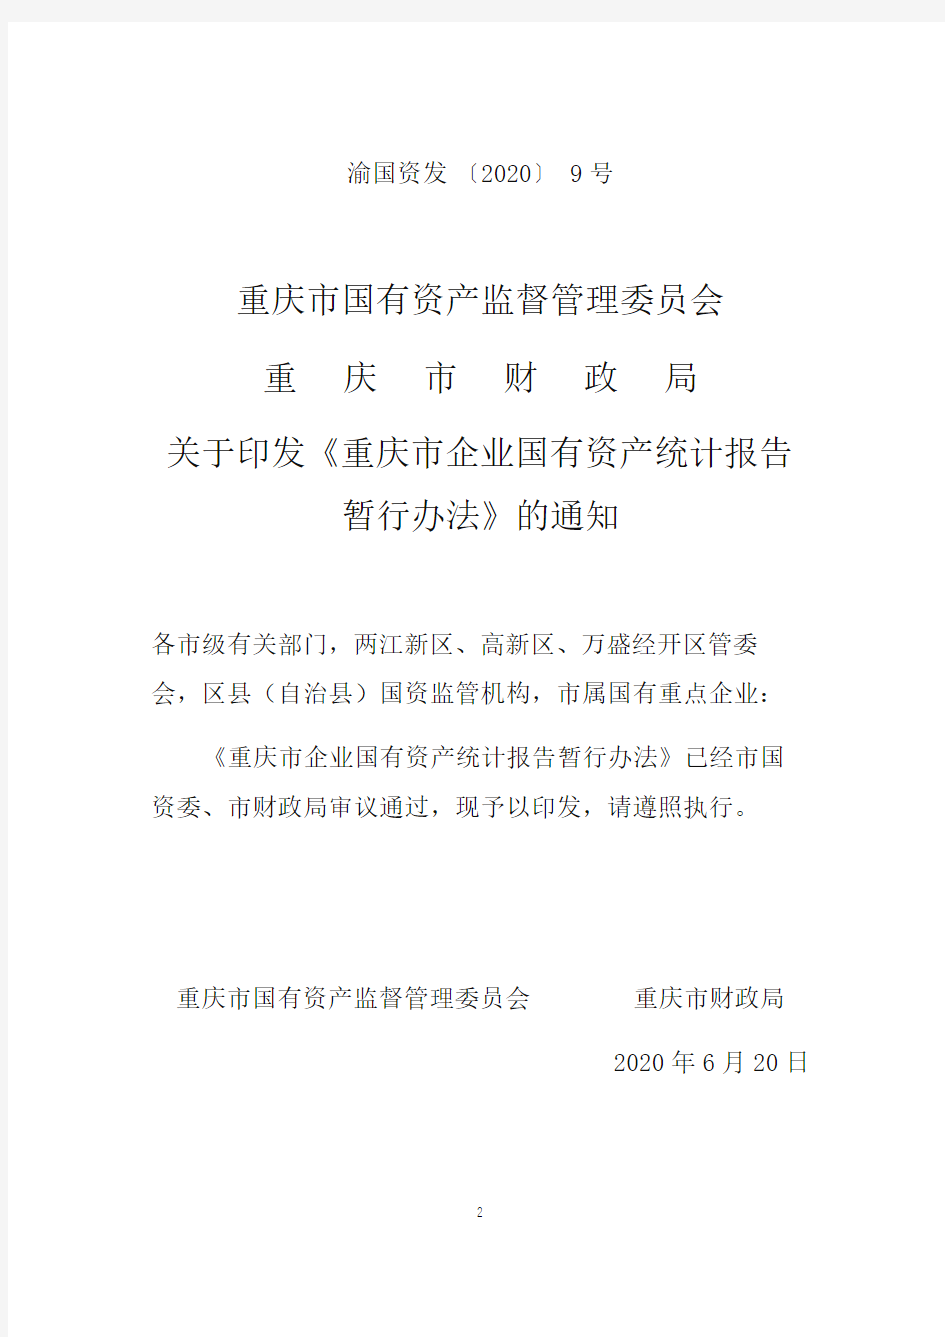 重庆市企业国有资产统计报告暂行办法